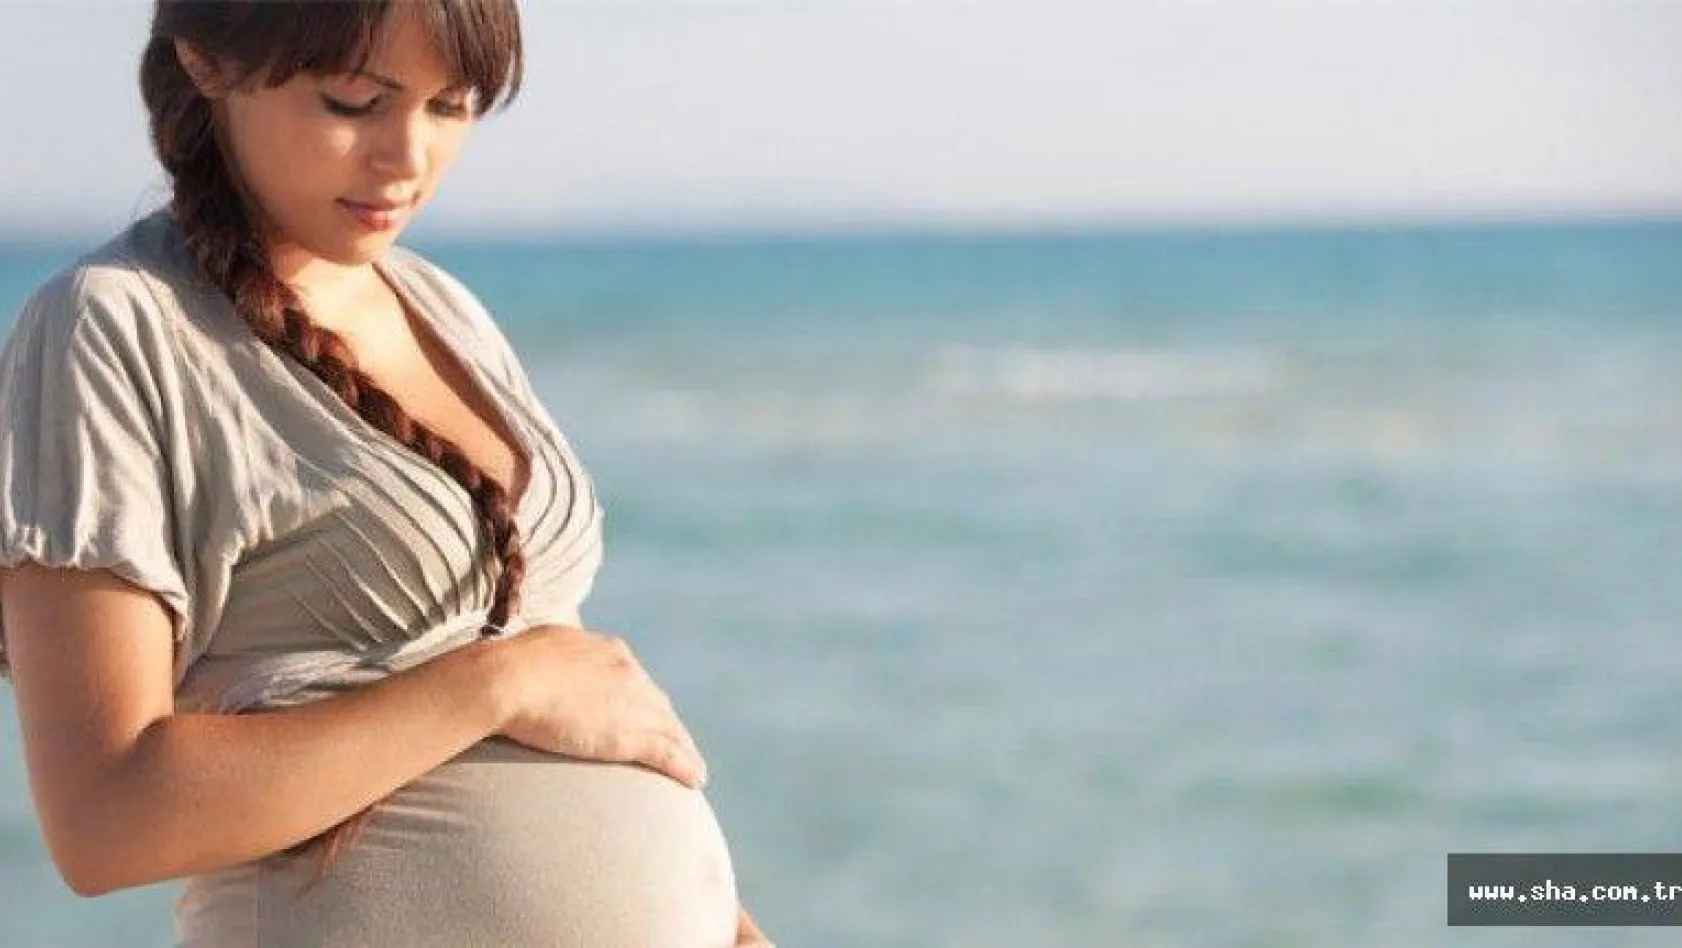 Hamilelikte keyifli bir tatil için 6 ipucu